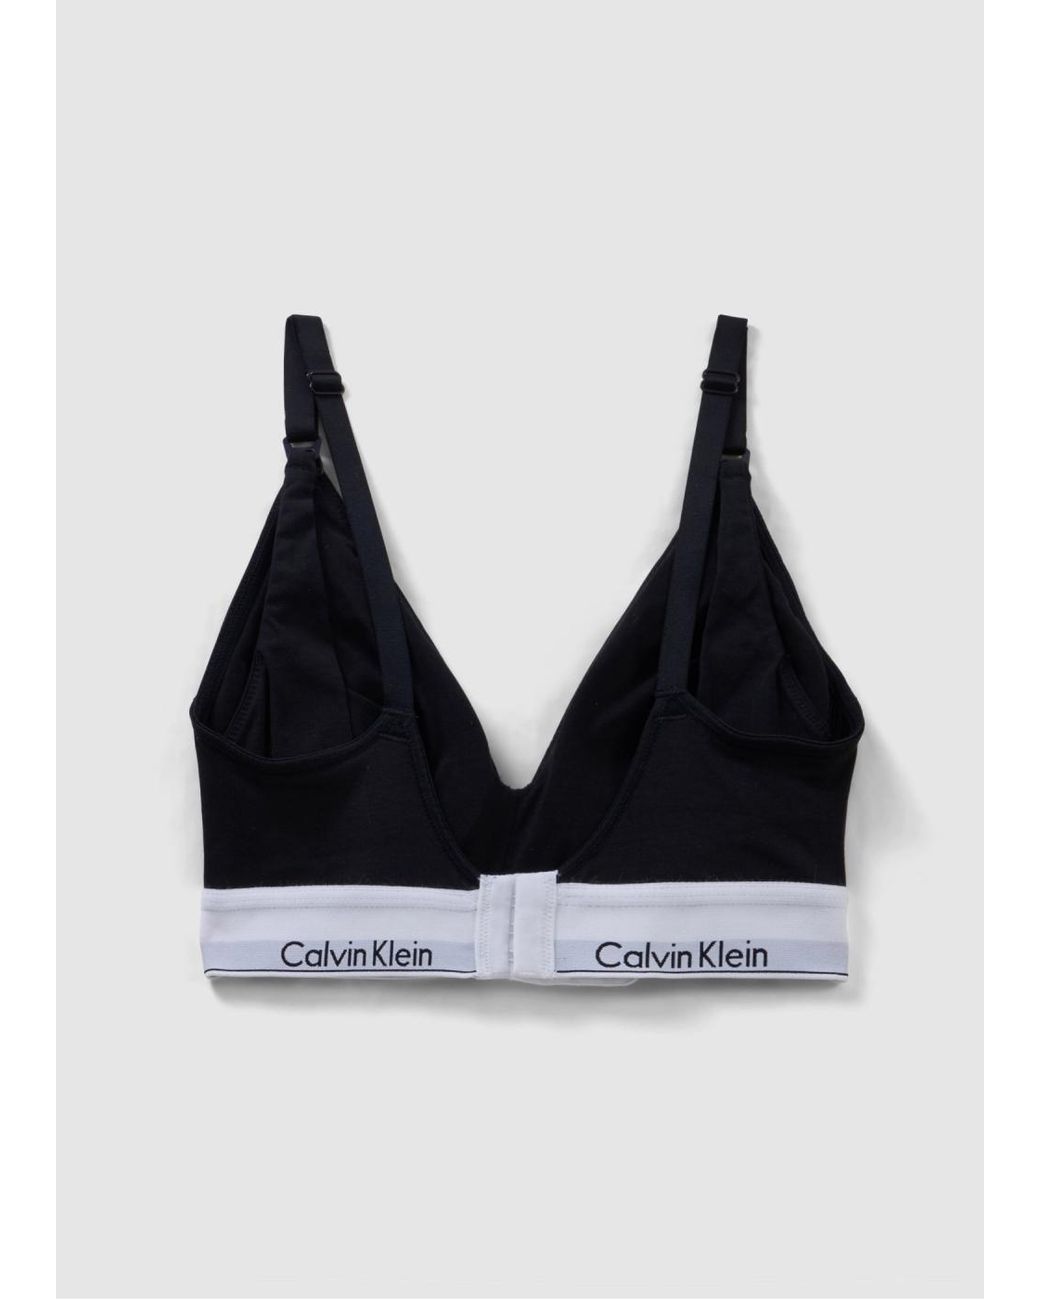 Calvin Klein Underwear Modern Cotton Maternity Bralette in Black